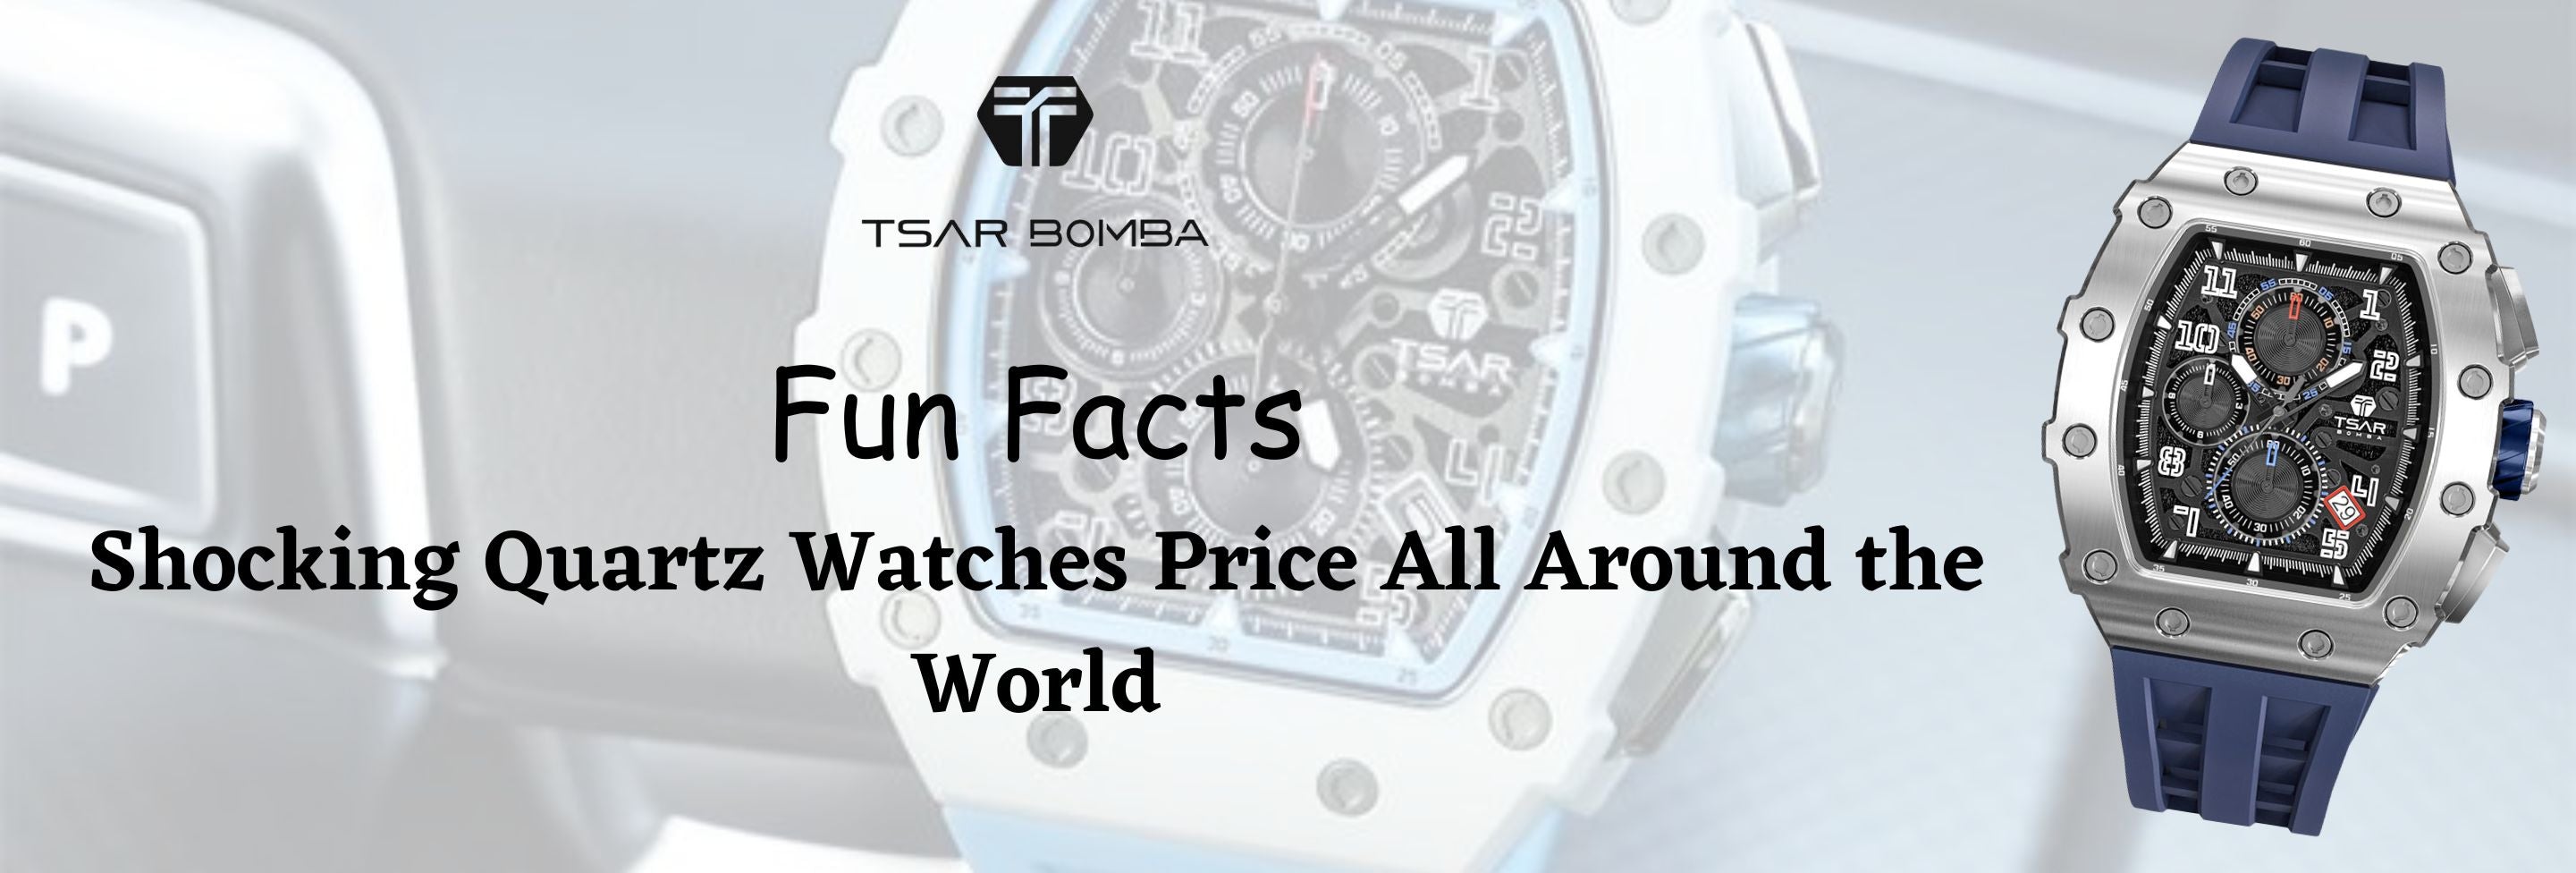 Fun Facts: Shocking Quartz Watches Price All Around the World